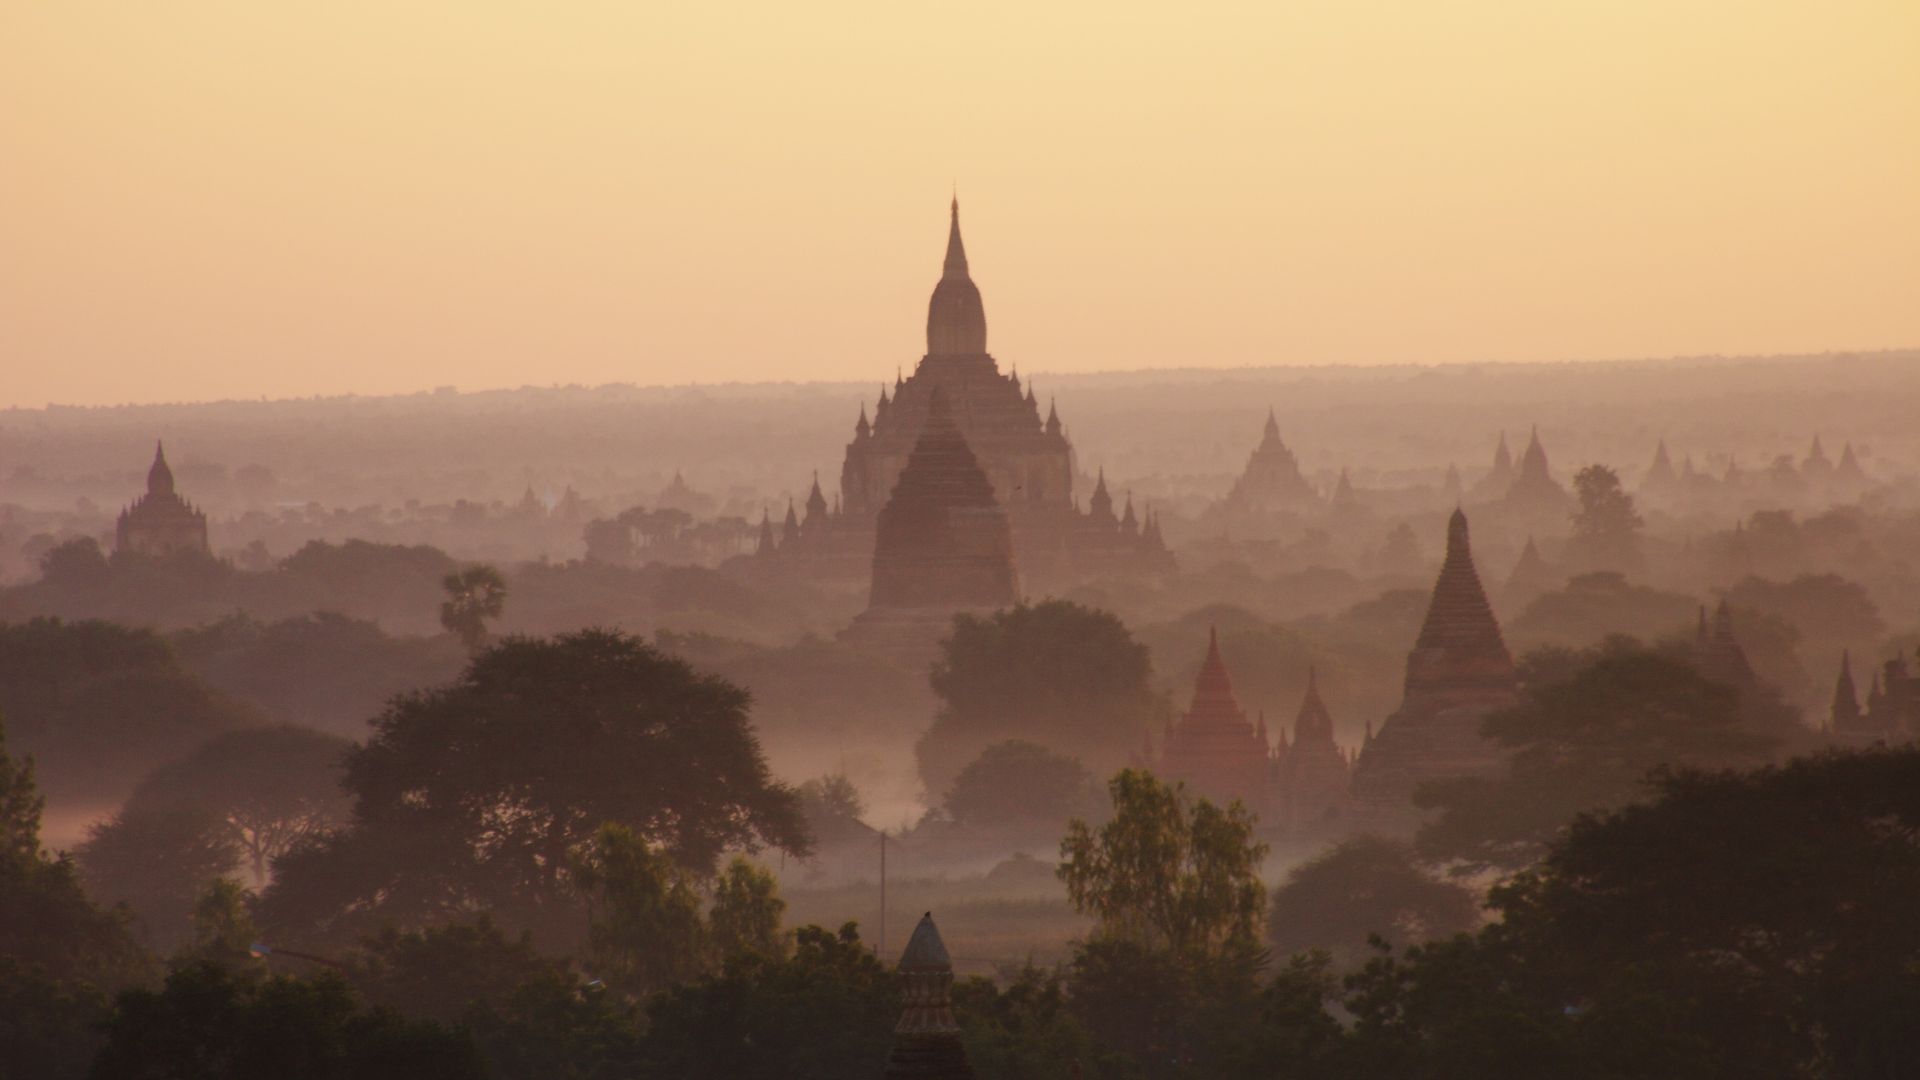 Desktop Wallpaper Temples Of Bagan, Myanmar, Burma, Sunrise. Horizon,  Nature, Hd Image, Picture, Background, Dlj6n9